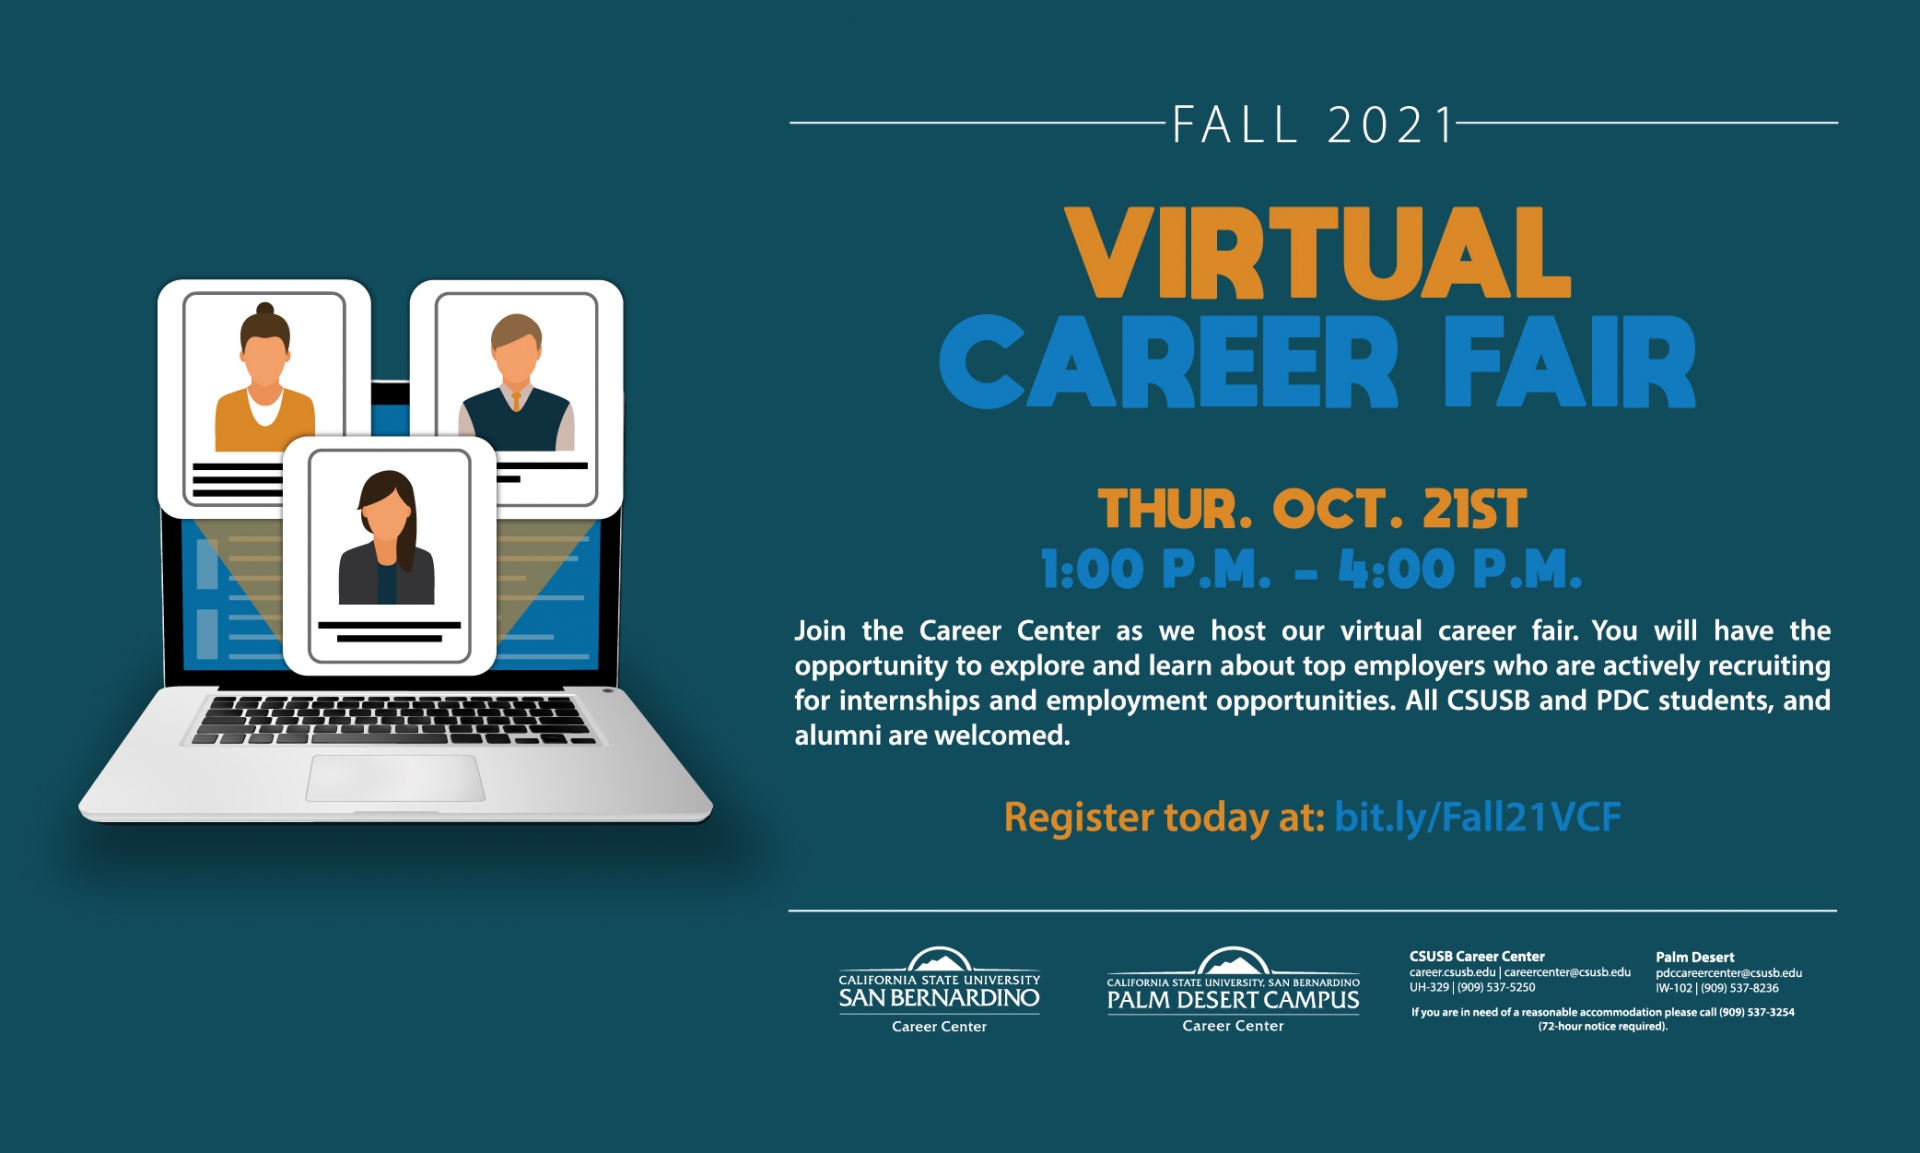 Fall 2021 Virtual Career Fair